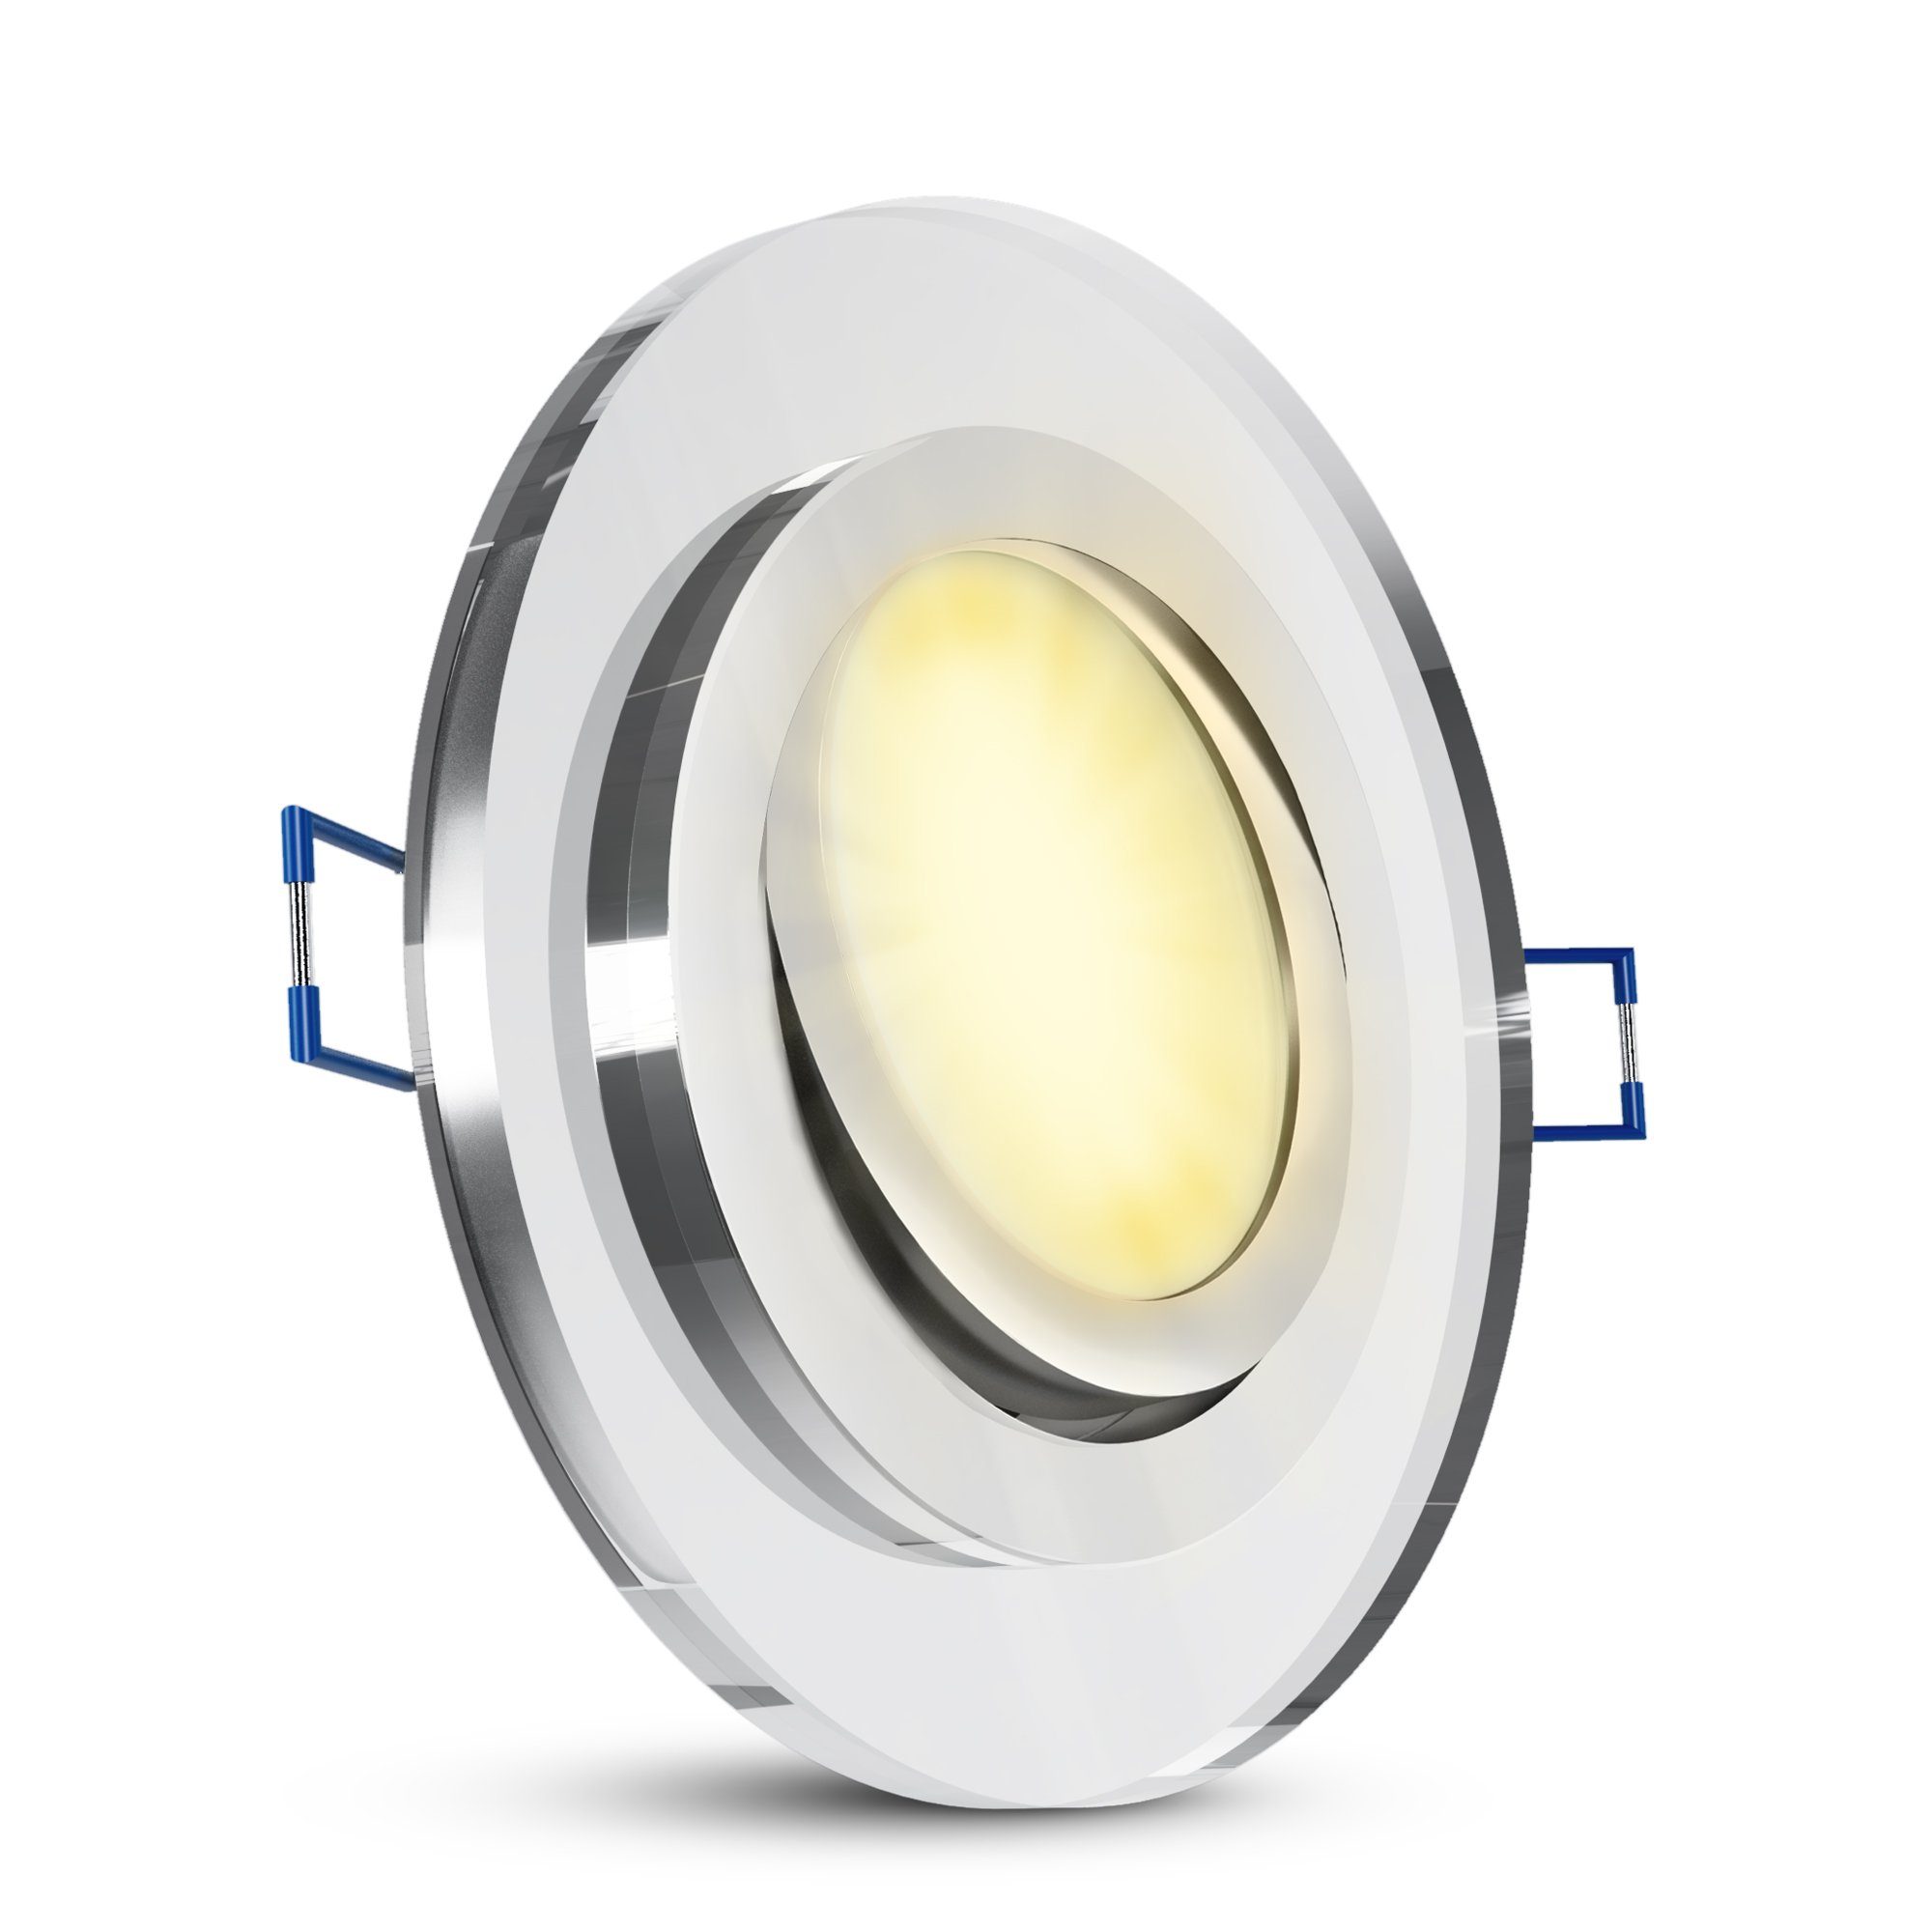 Neuware SSC-LUXon LED Warmweiß mit Glas schwenkbar Modul, Flache Einbauleuchte LED LED & rund dimmbar Einbaustrahler